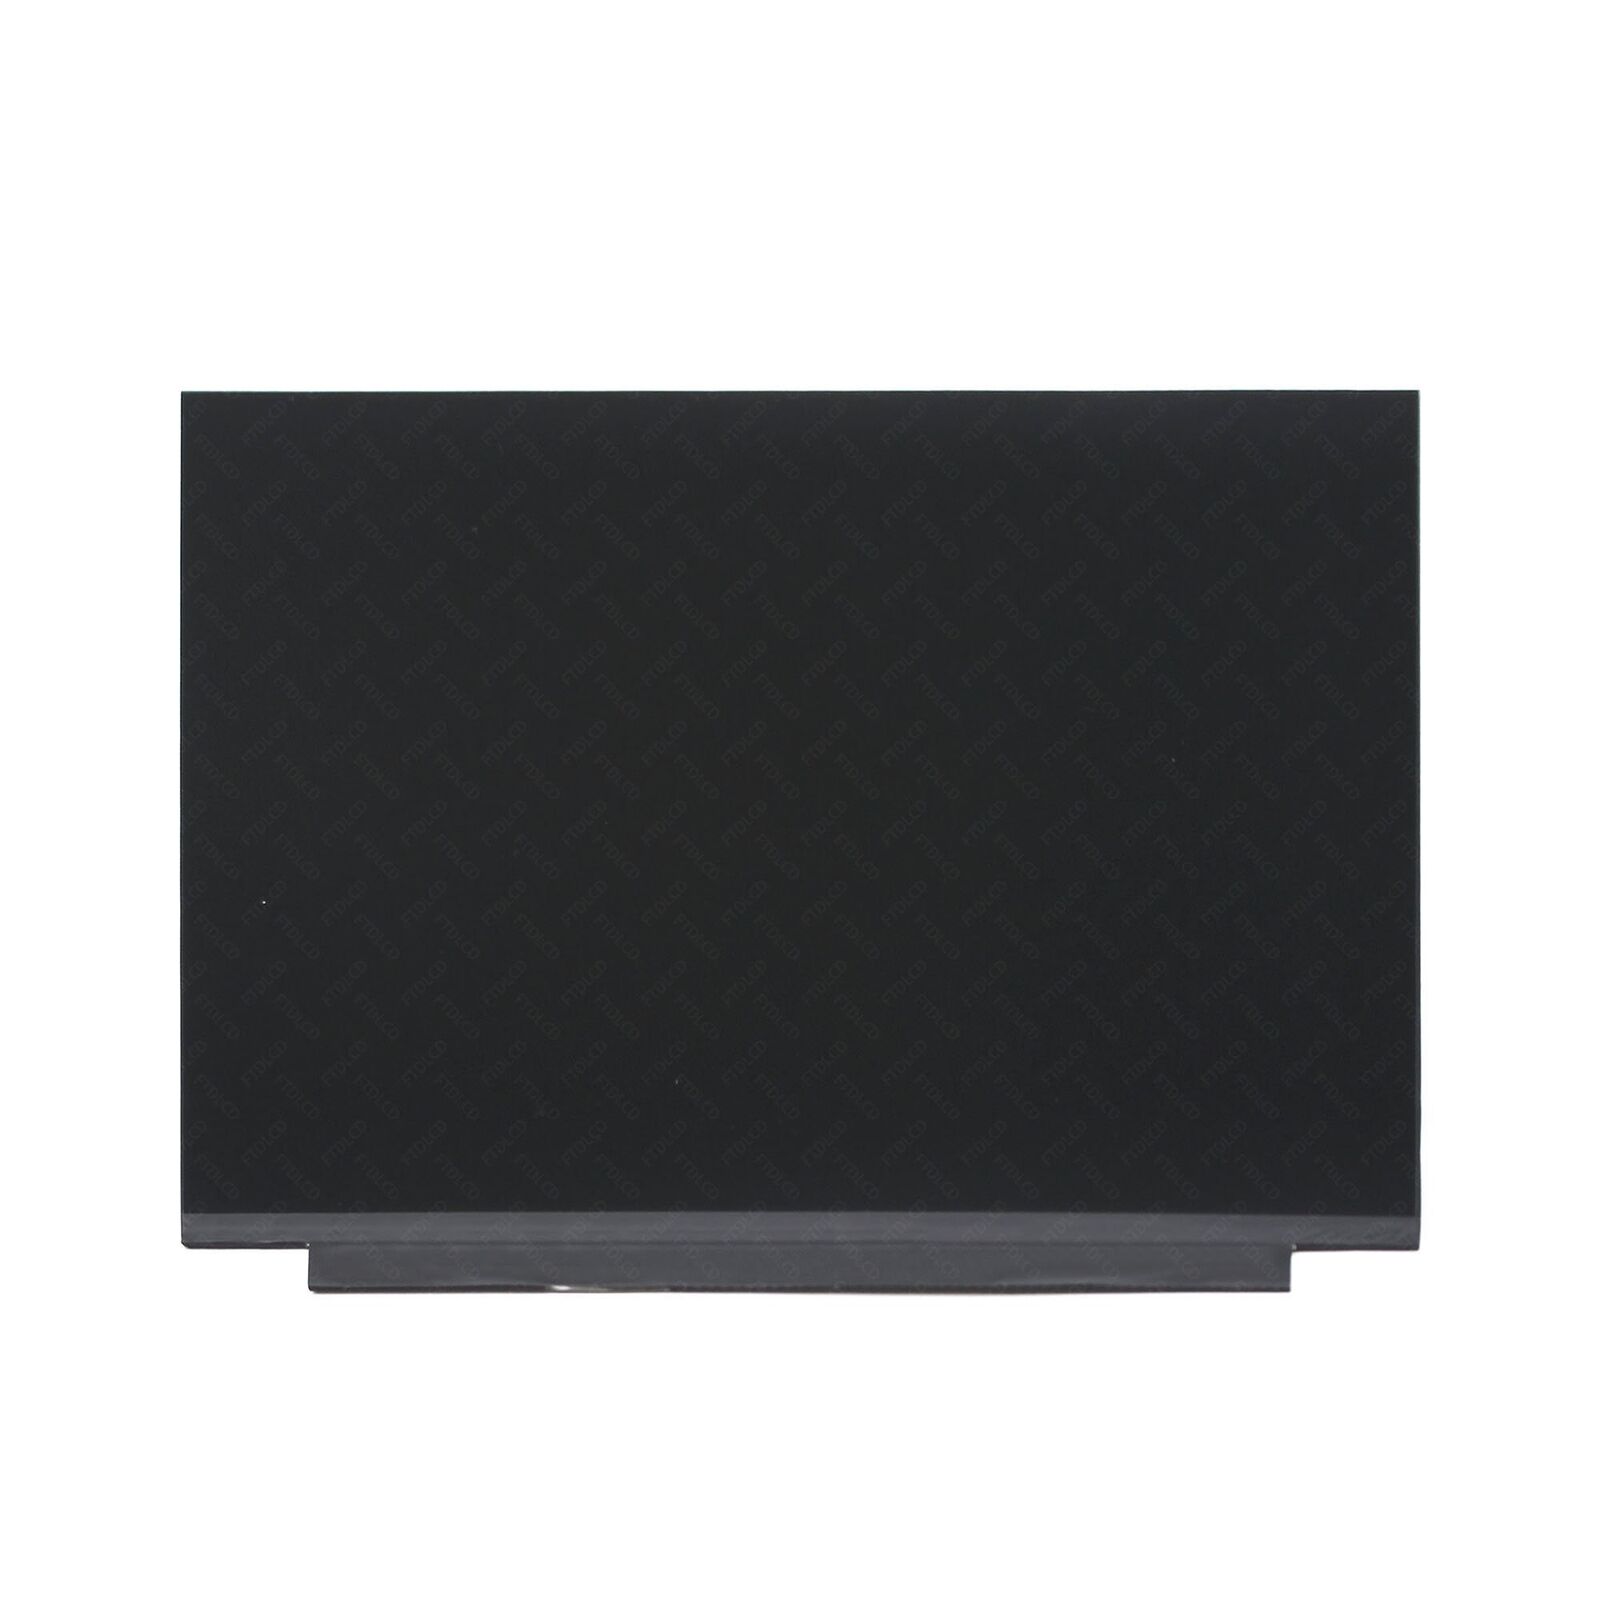 NE135FBM-N41 V8.1 LED LCD Screen 13.5